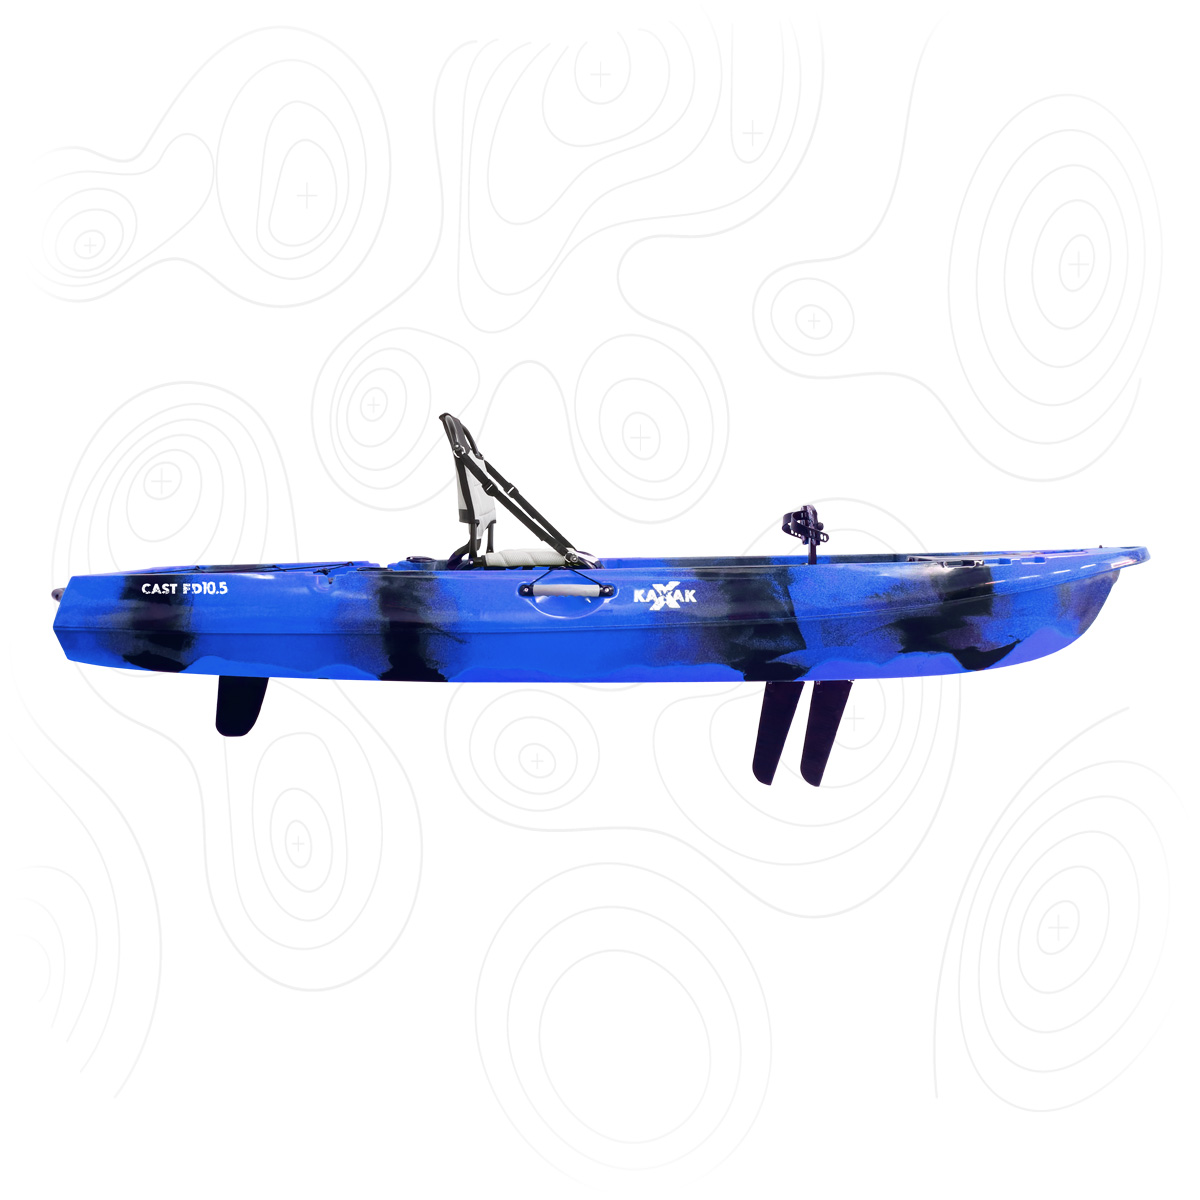 CAST FD10.5 <br><span style="color: #a6df4b;font-size:80%;">SABER MAIS</span><br><span style="color: #9d9997;font-size:70%;">Um Kayak super estável que não desilude o pescador de águas interiores. Equipado com sistema de pedais de pás</span>